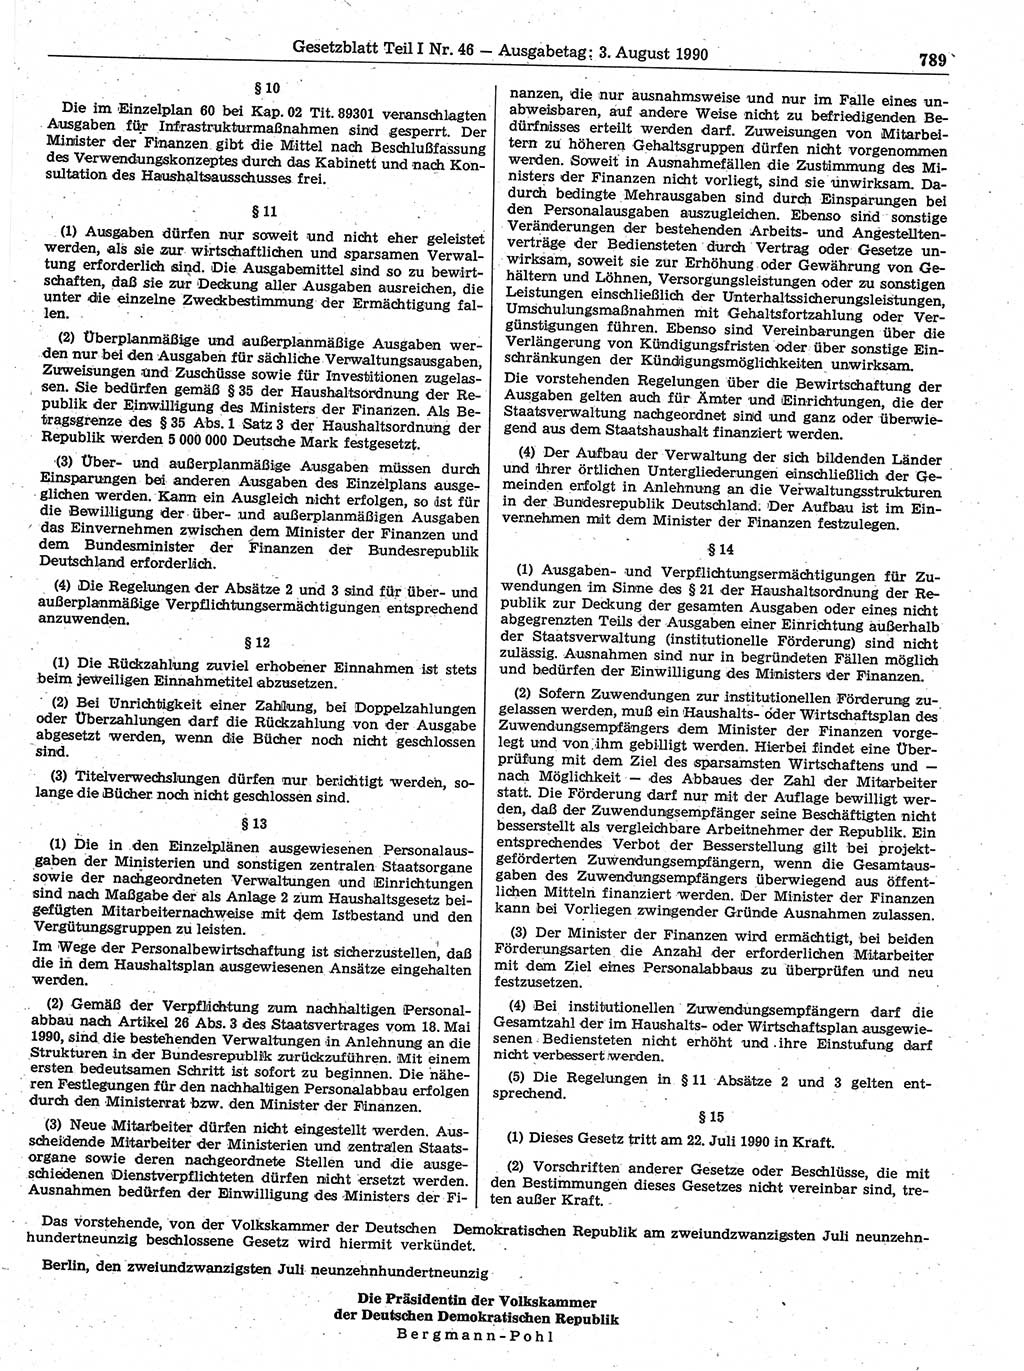 Gesetzblatt (GBl.) der Deutschen Demokratischen Republik (DDR) Teil Ⅰ 1990, Seite 789 (GBl. DDR Ⅰ 1990, S. 789)